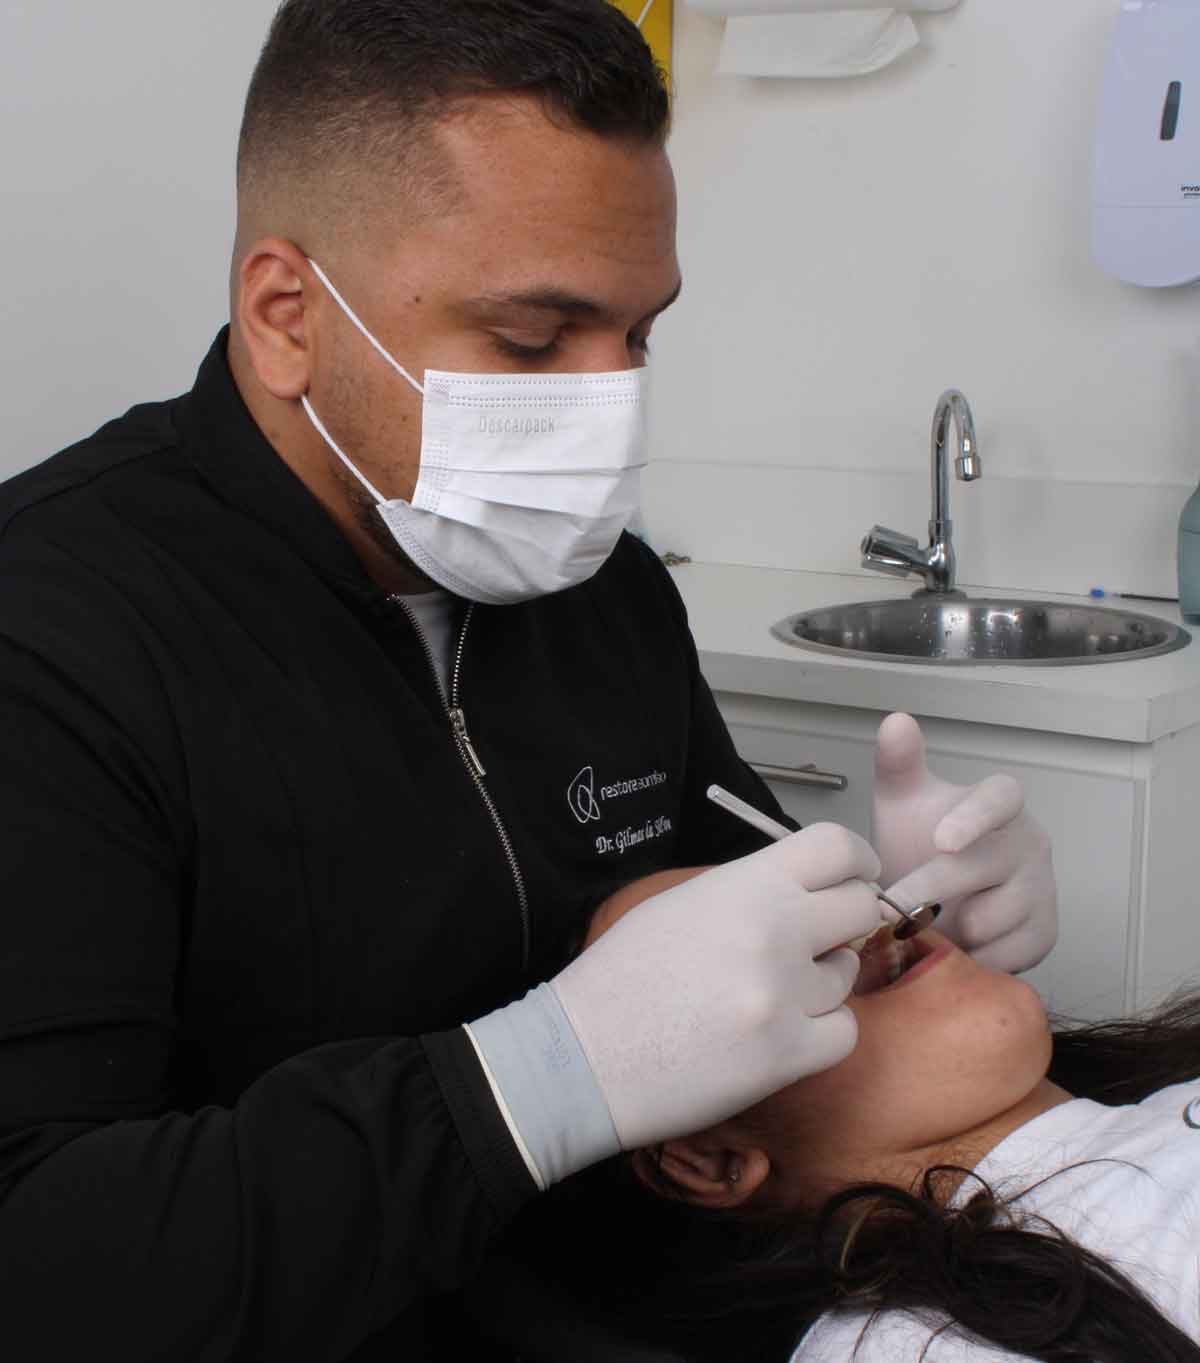 Implante dentário de carga imediata: dr. Gilmar da Silva explica como funciona a cirurgia. Foto: Divulgação